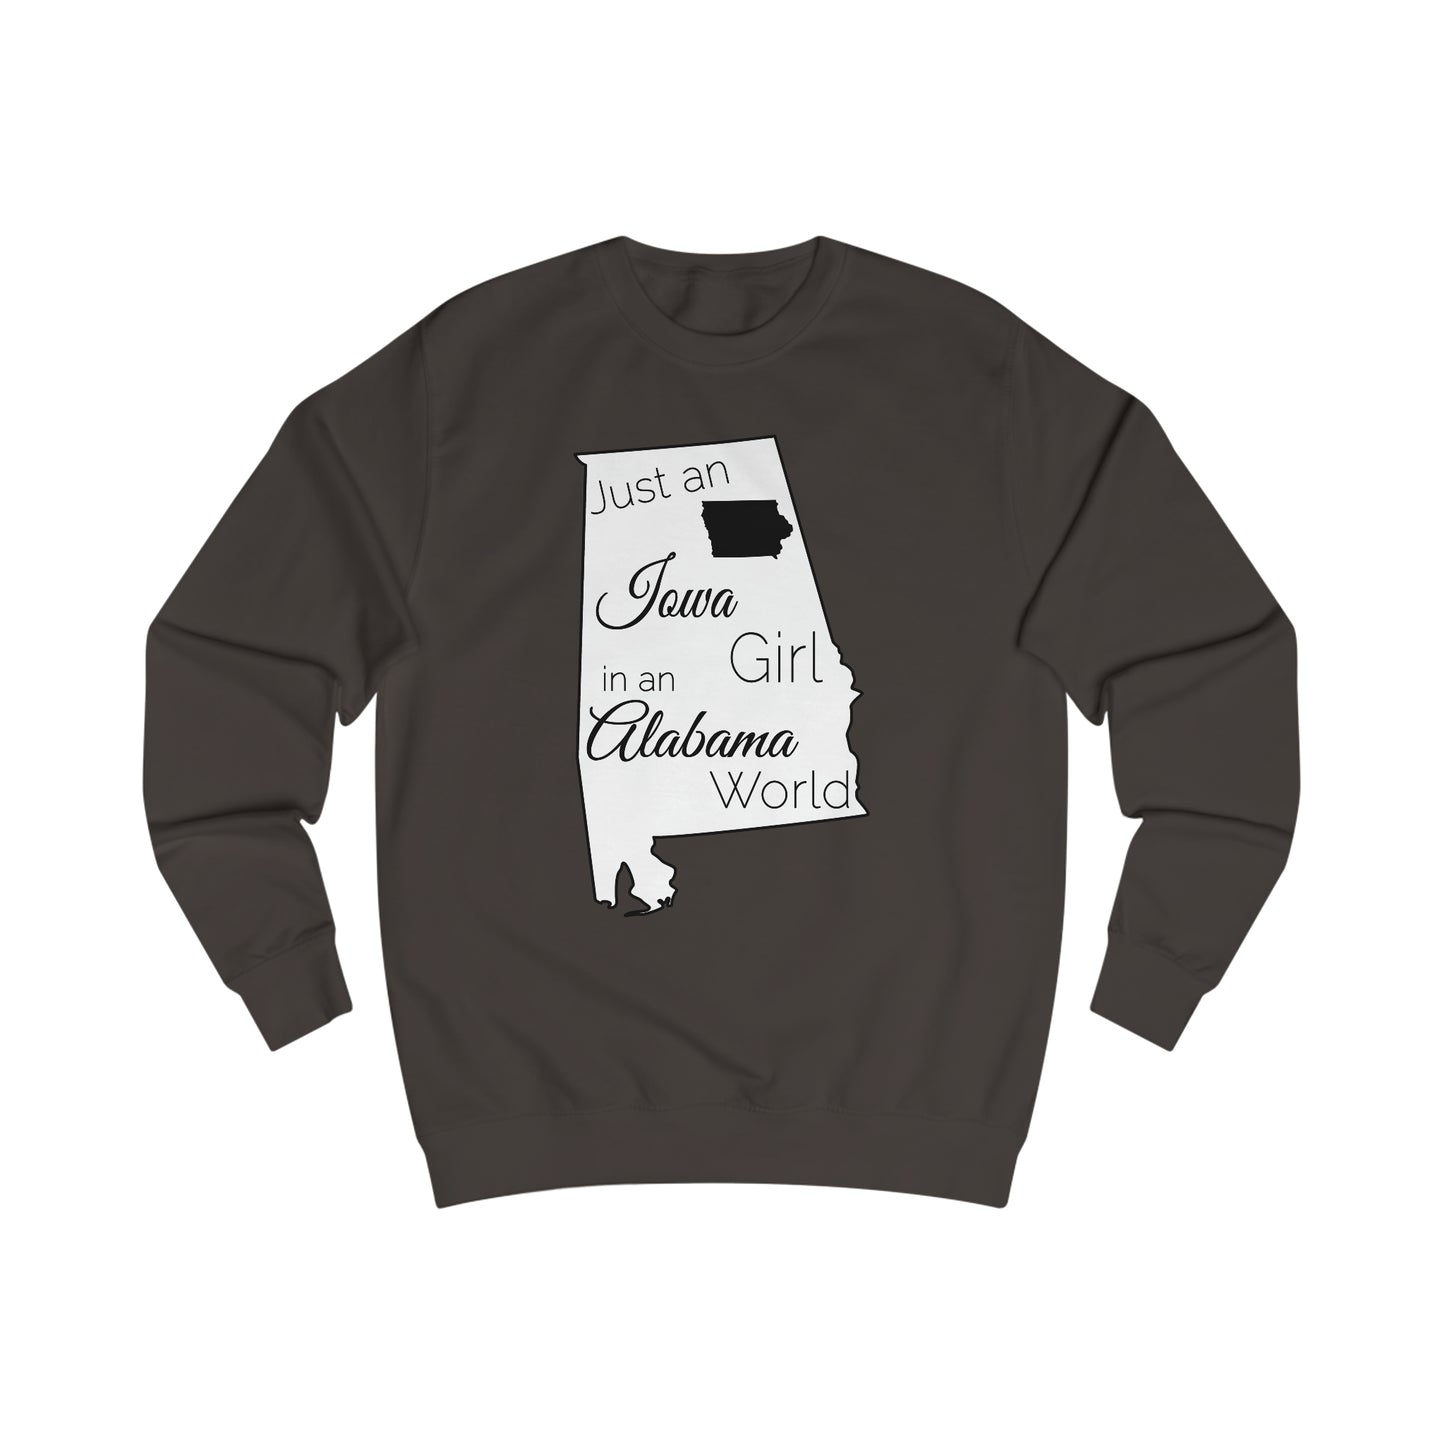 Just an Iowa Girl in an Alabama World Sweatshirt